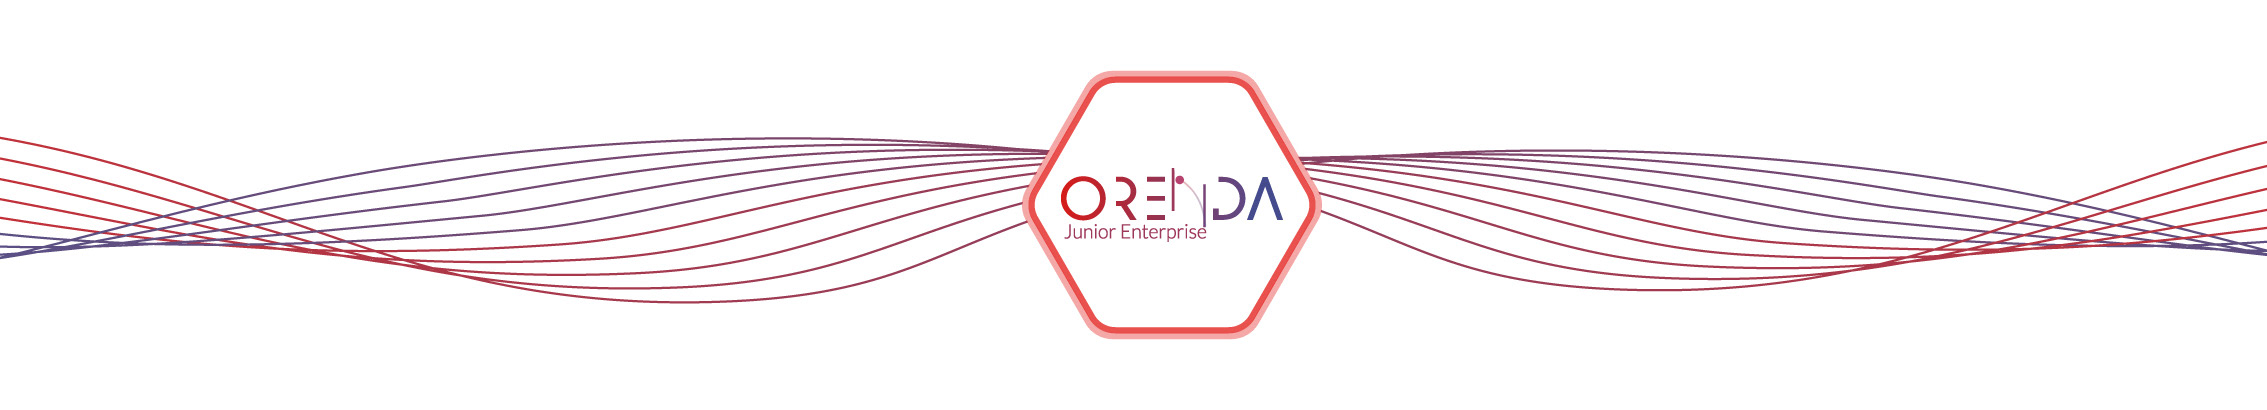 Orenda Junior Entreprise's profile banner